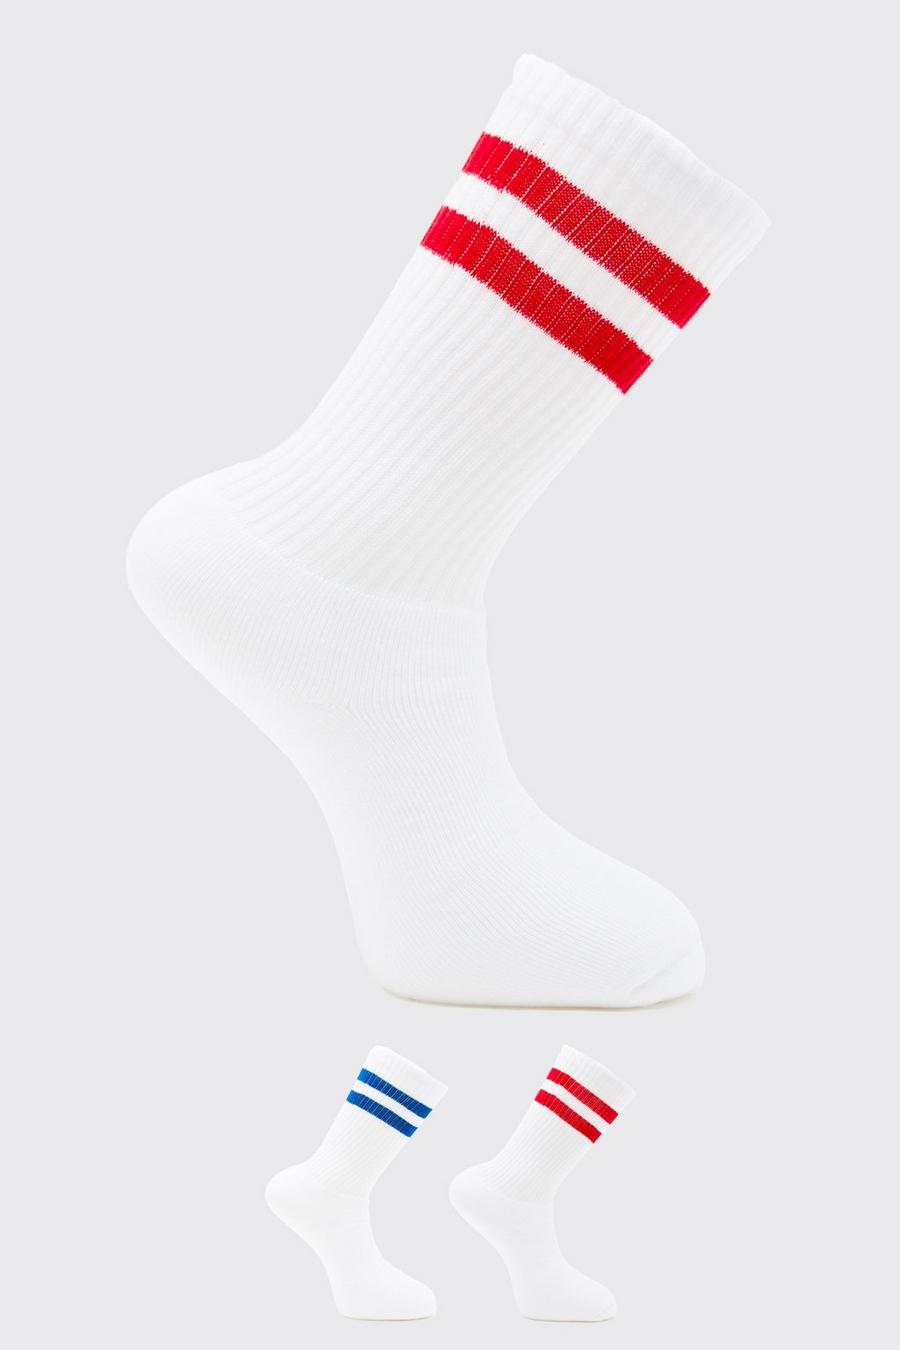 Pack de 2 pares de calcetines deportivos mixtos con rayas, White blanco